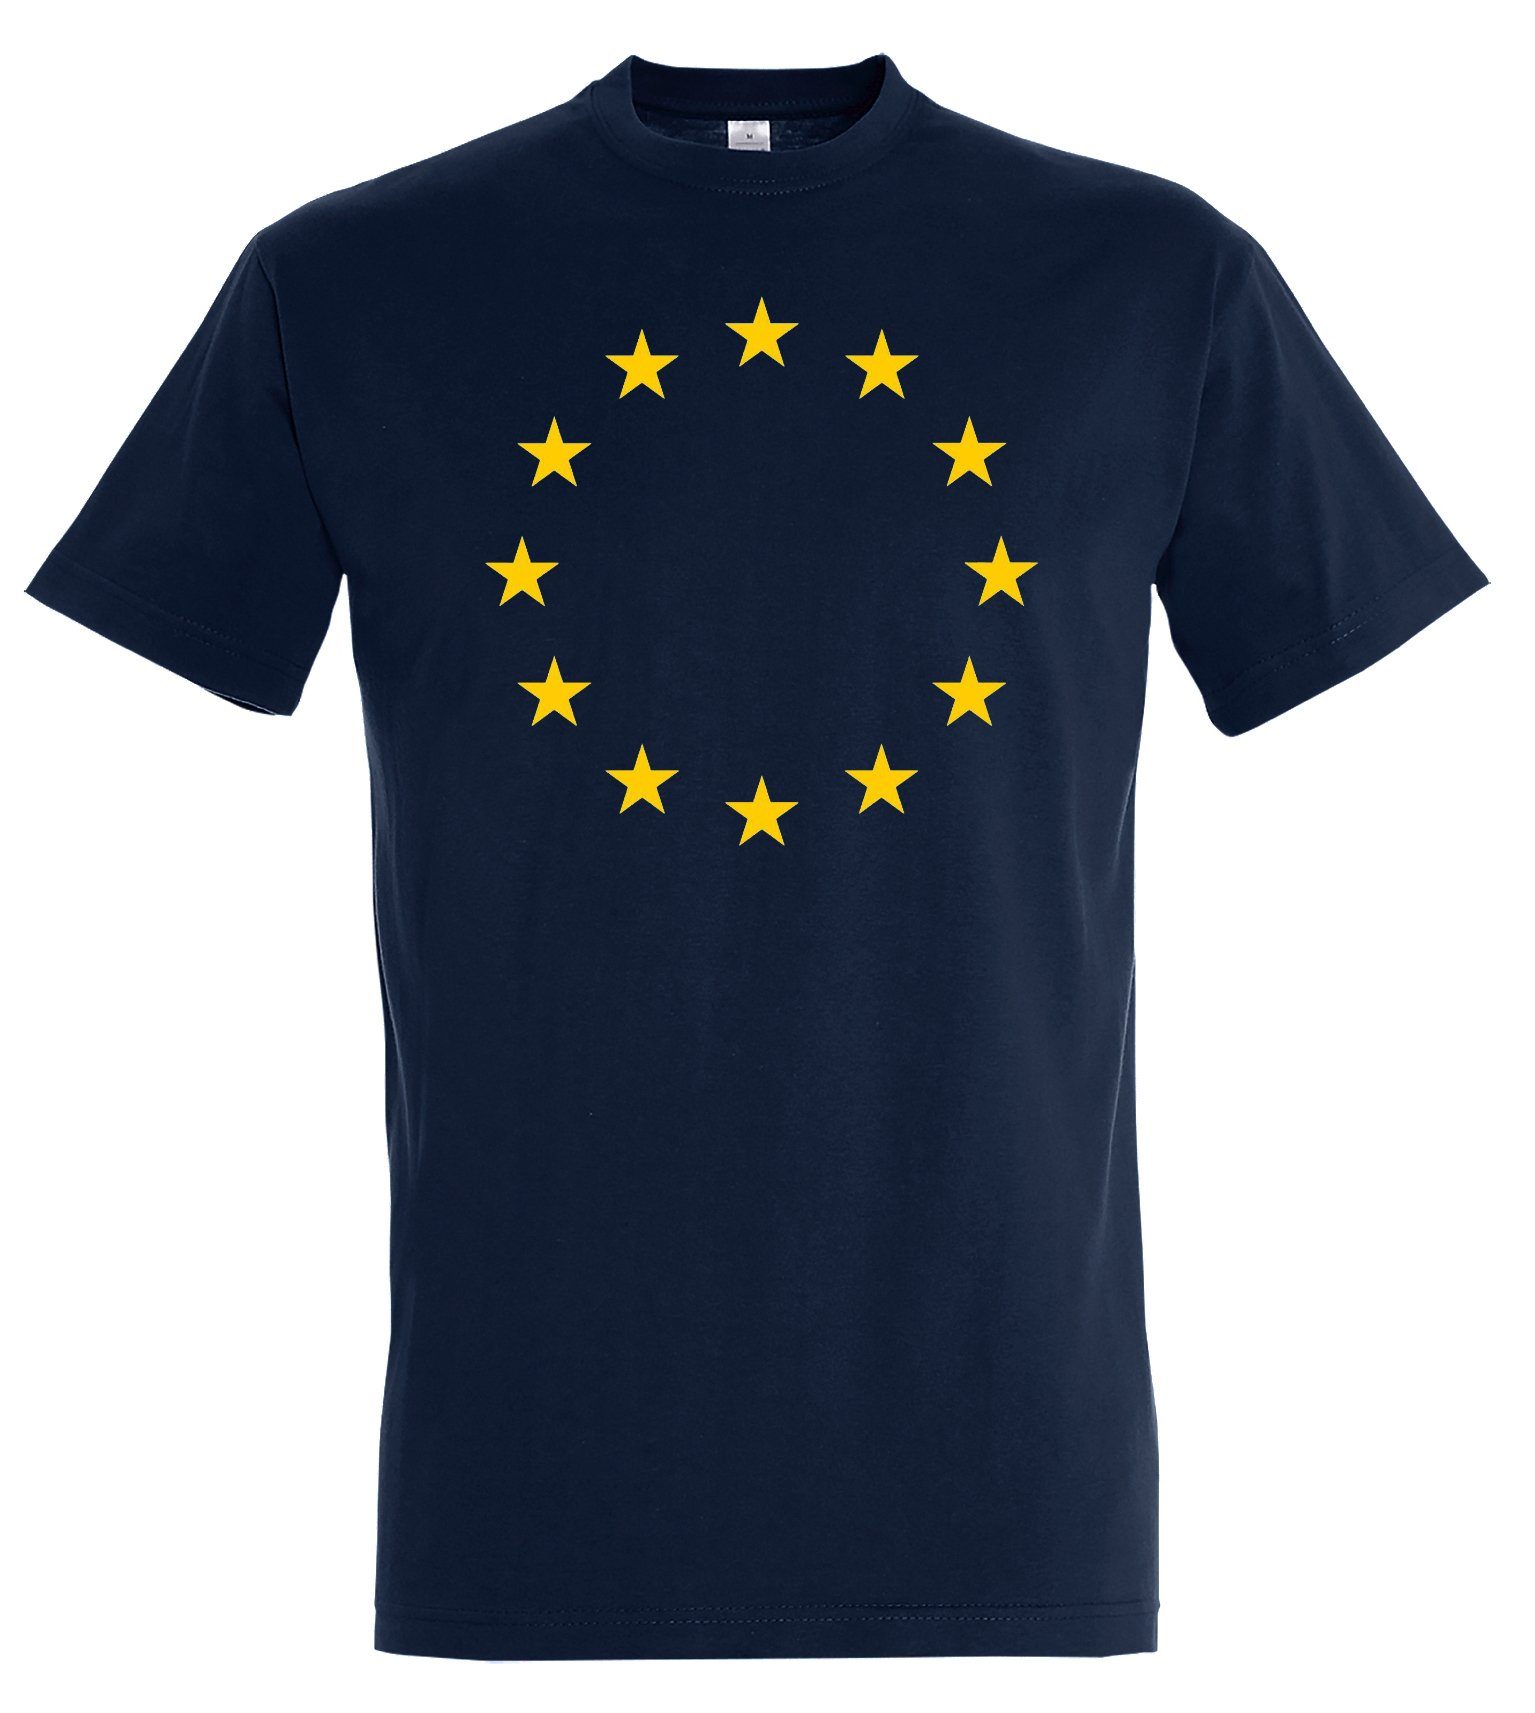 modischem Sterne Print-Shirt EU Youth mit EU Aufdruck Herren T-Shirt Designz Navyblau Flagge Europa